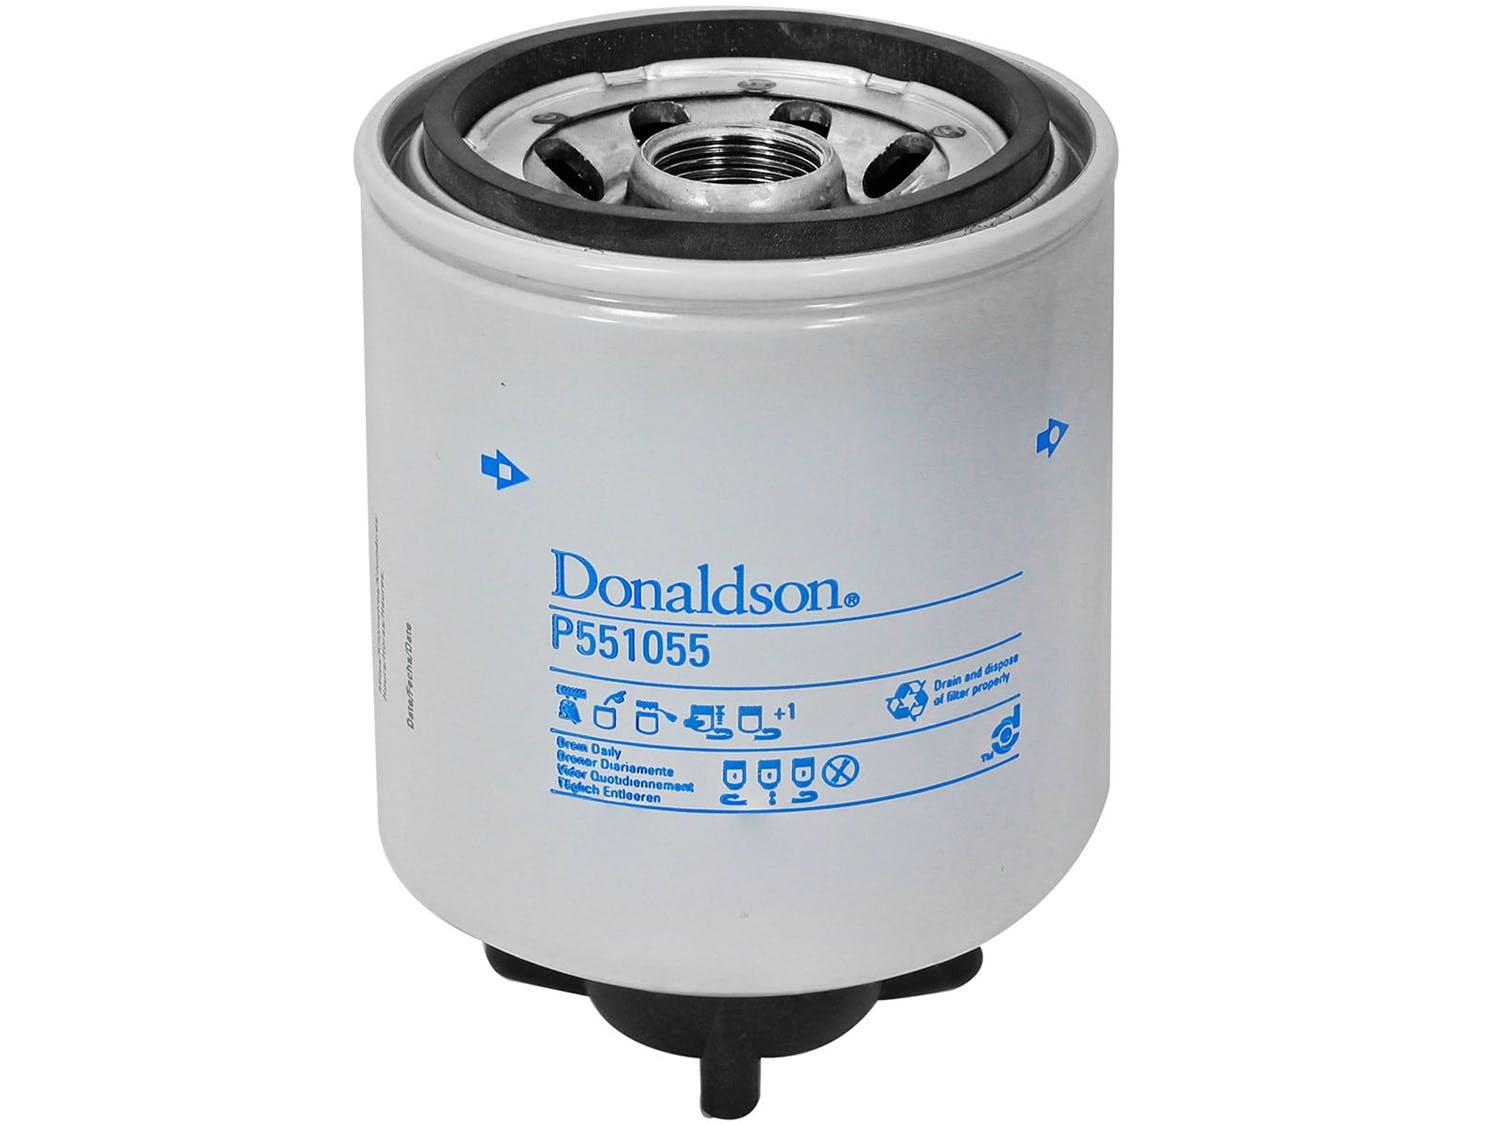 AFE 44-FF018 aFe Power DFS780 Series Donaldson Fuel Filter